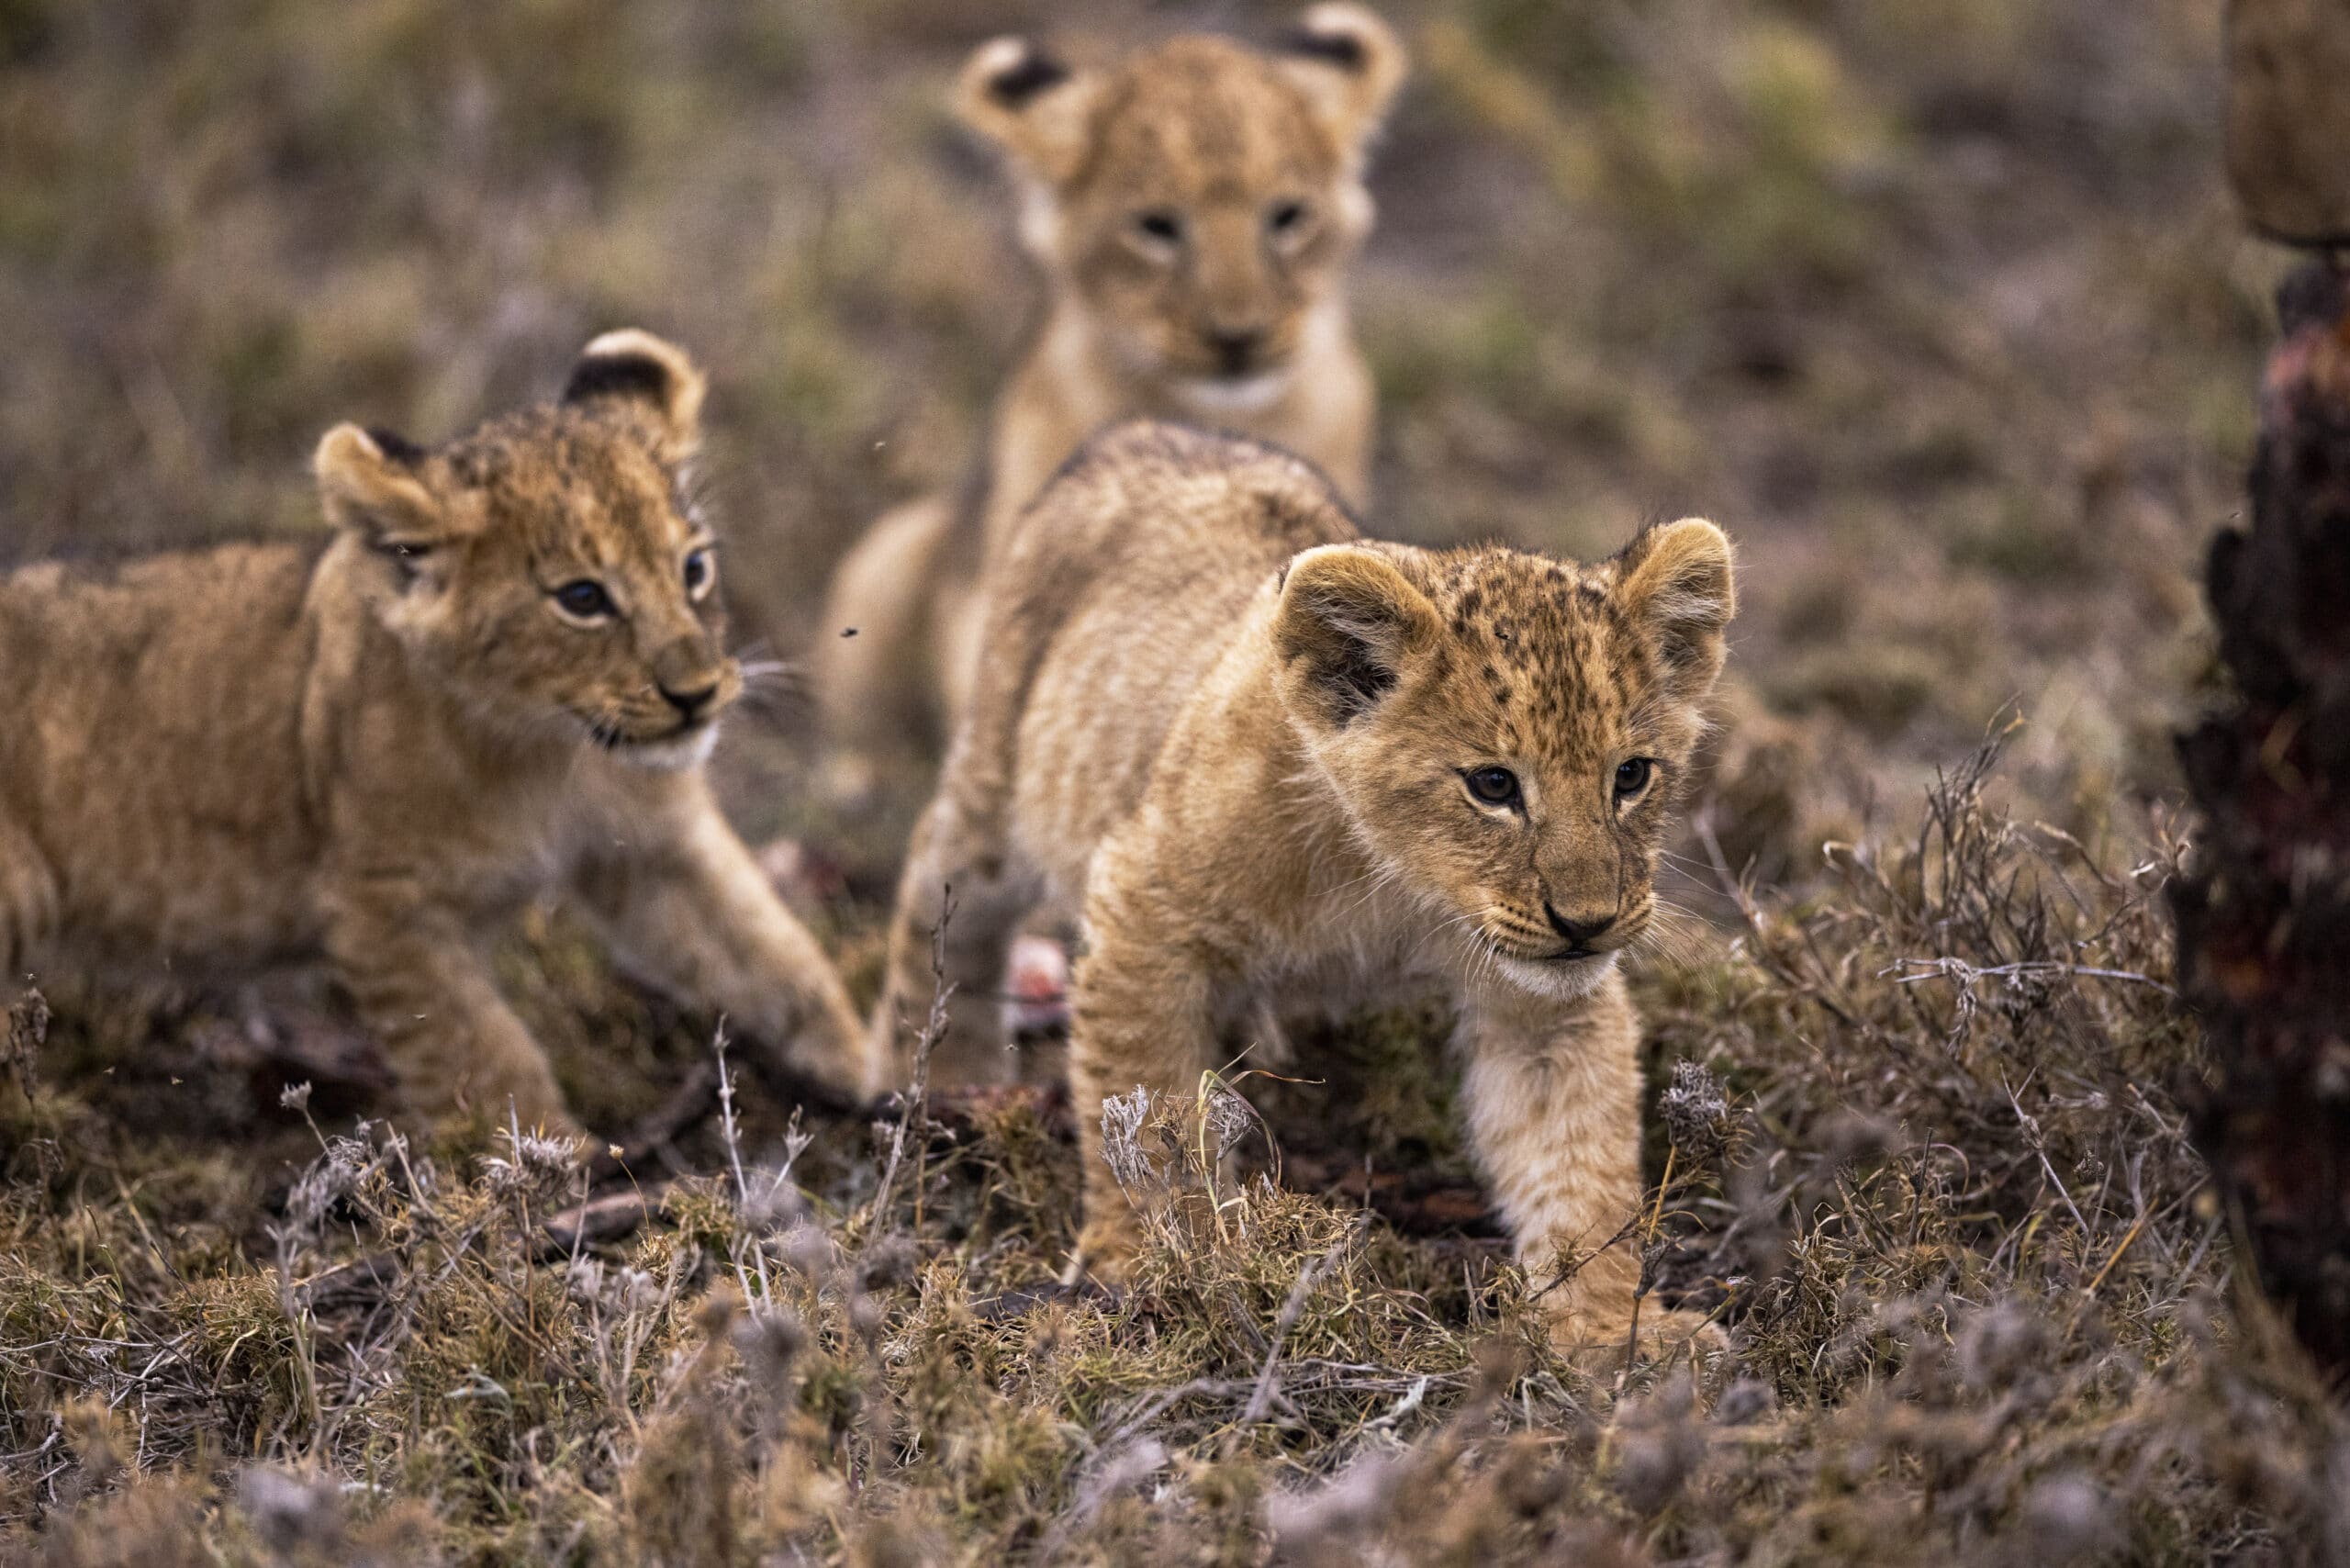 Drei Löwenjunge erkunden gemeinsam das Grasland. Einer steht im Vordergrund und blickt direkt in die Kamera, während die anderen beiden im Hintergrund spielen. © Fotografie Tomas Rodriguez